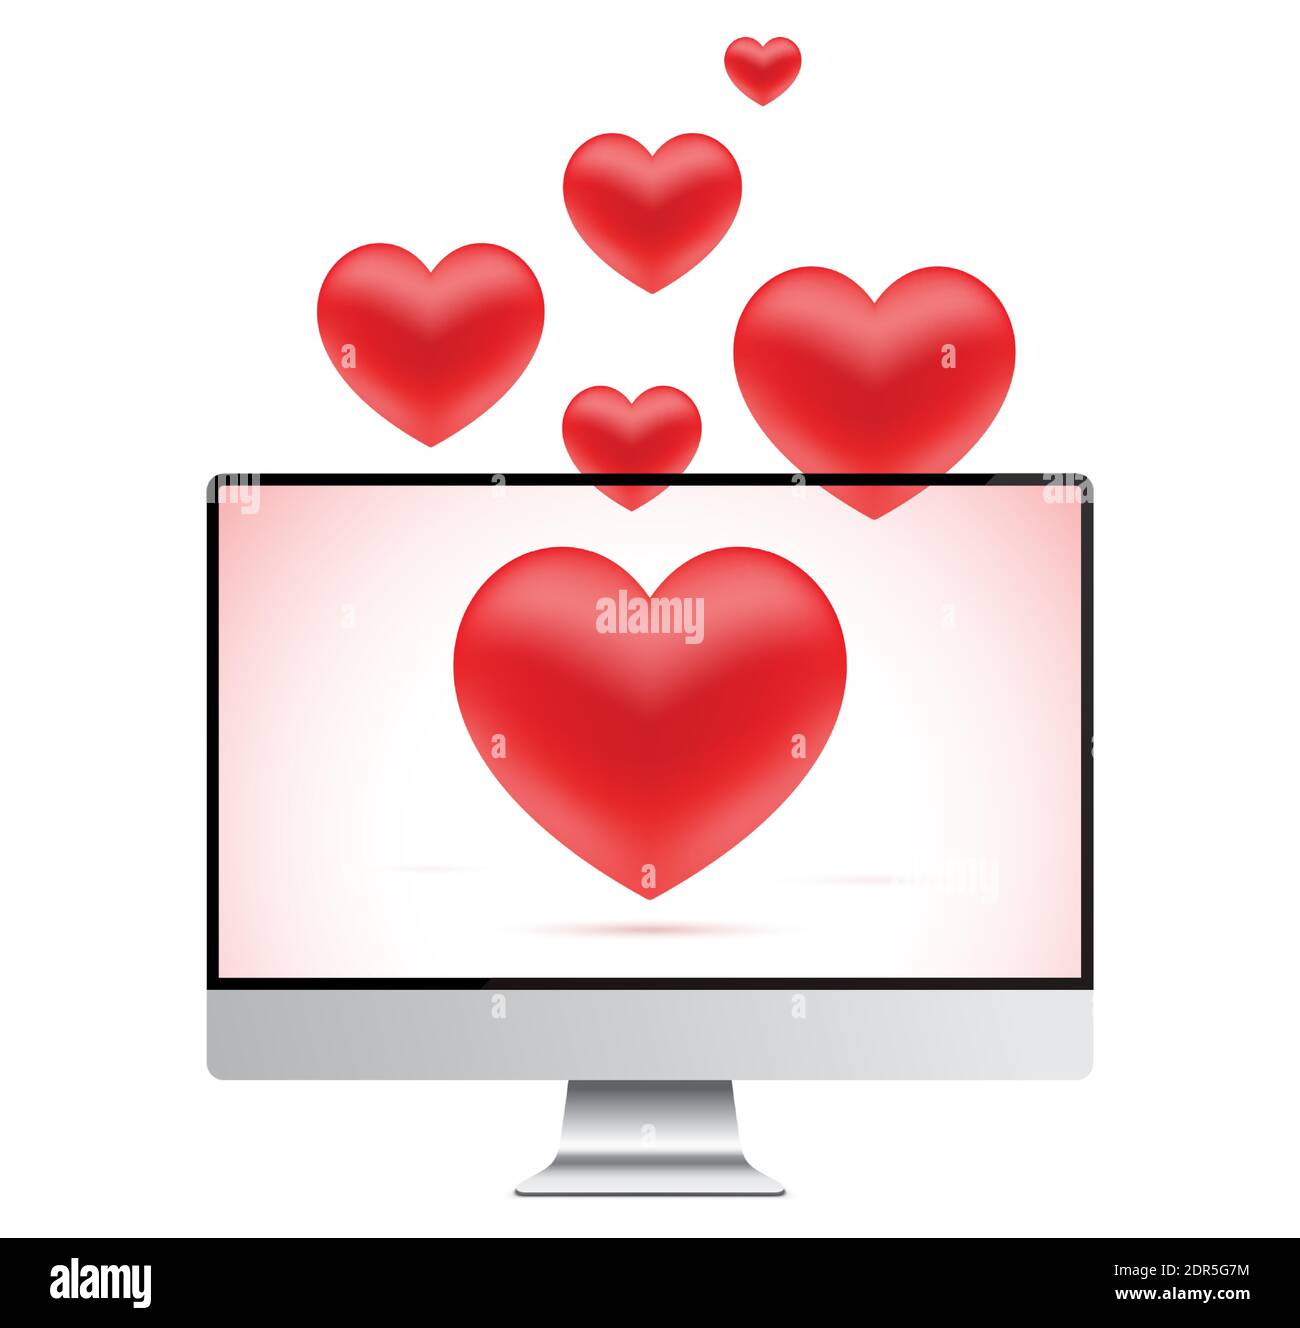 Concetto di messaggio romantico, con cuori rossi che volano fuori da uno schermo del personal computer. Illustrazione vettoriale per giorno di San Valentino, o decorazione di disegno di relazioni d'amore. Illustrazione Vettoriale